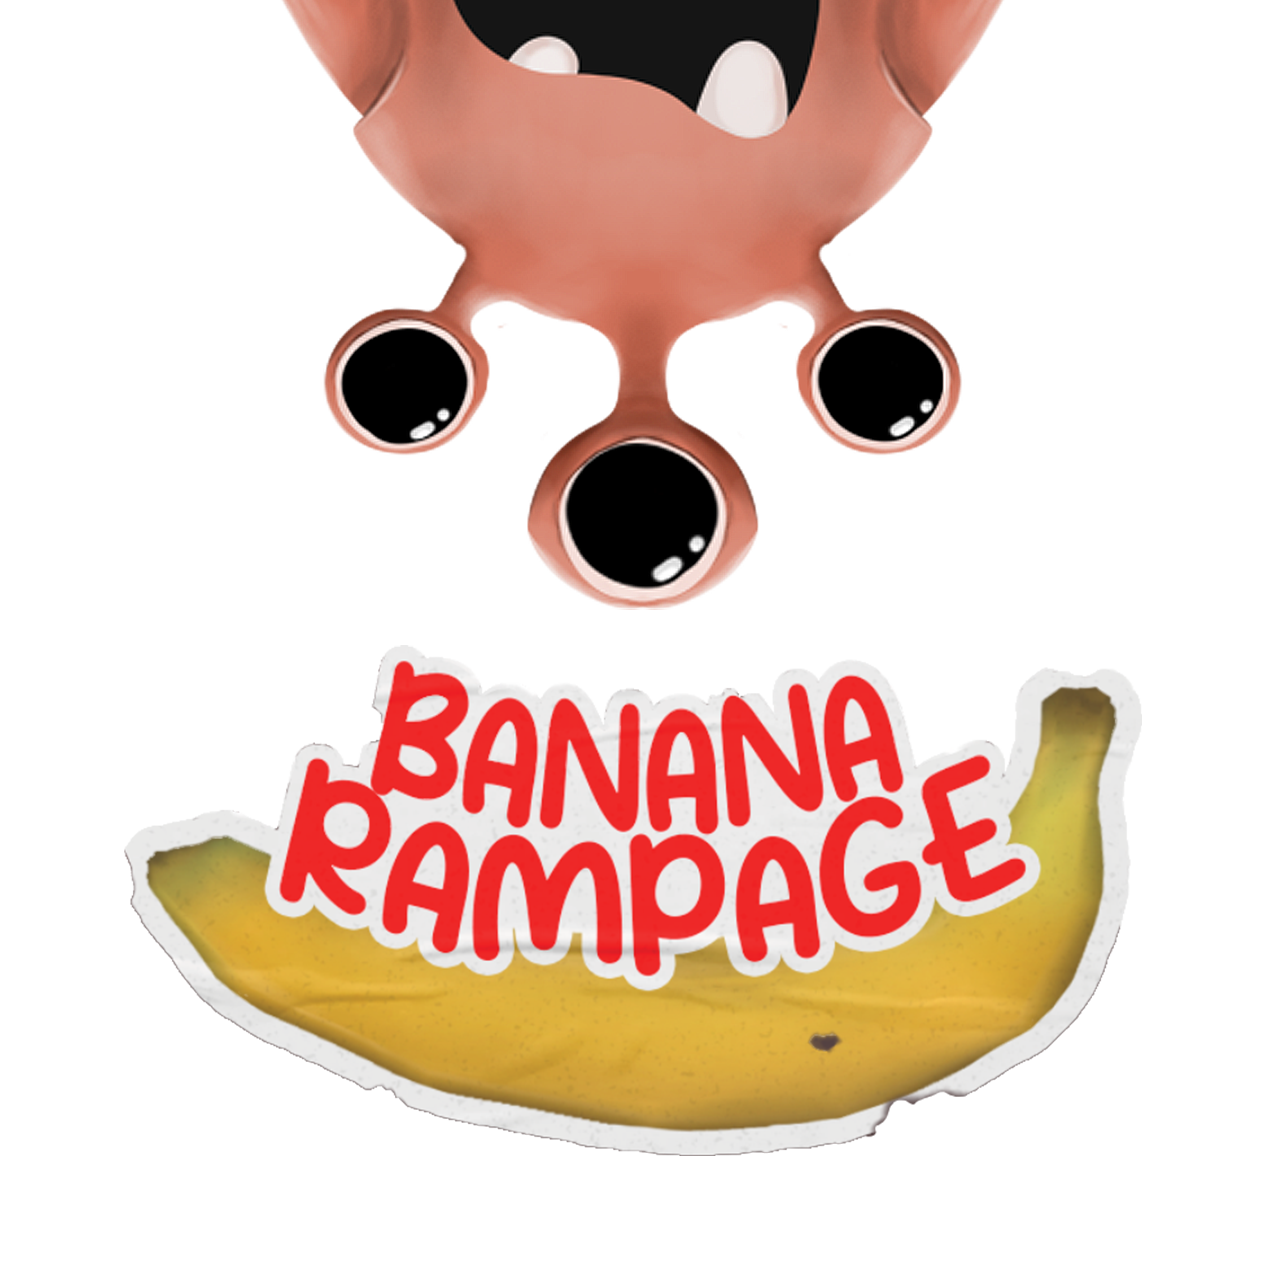 Banana Rampage